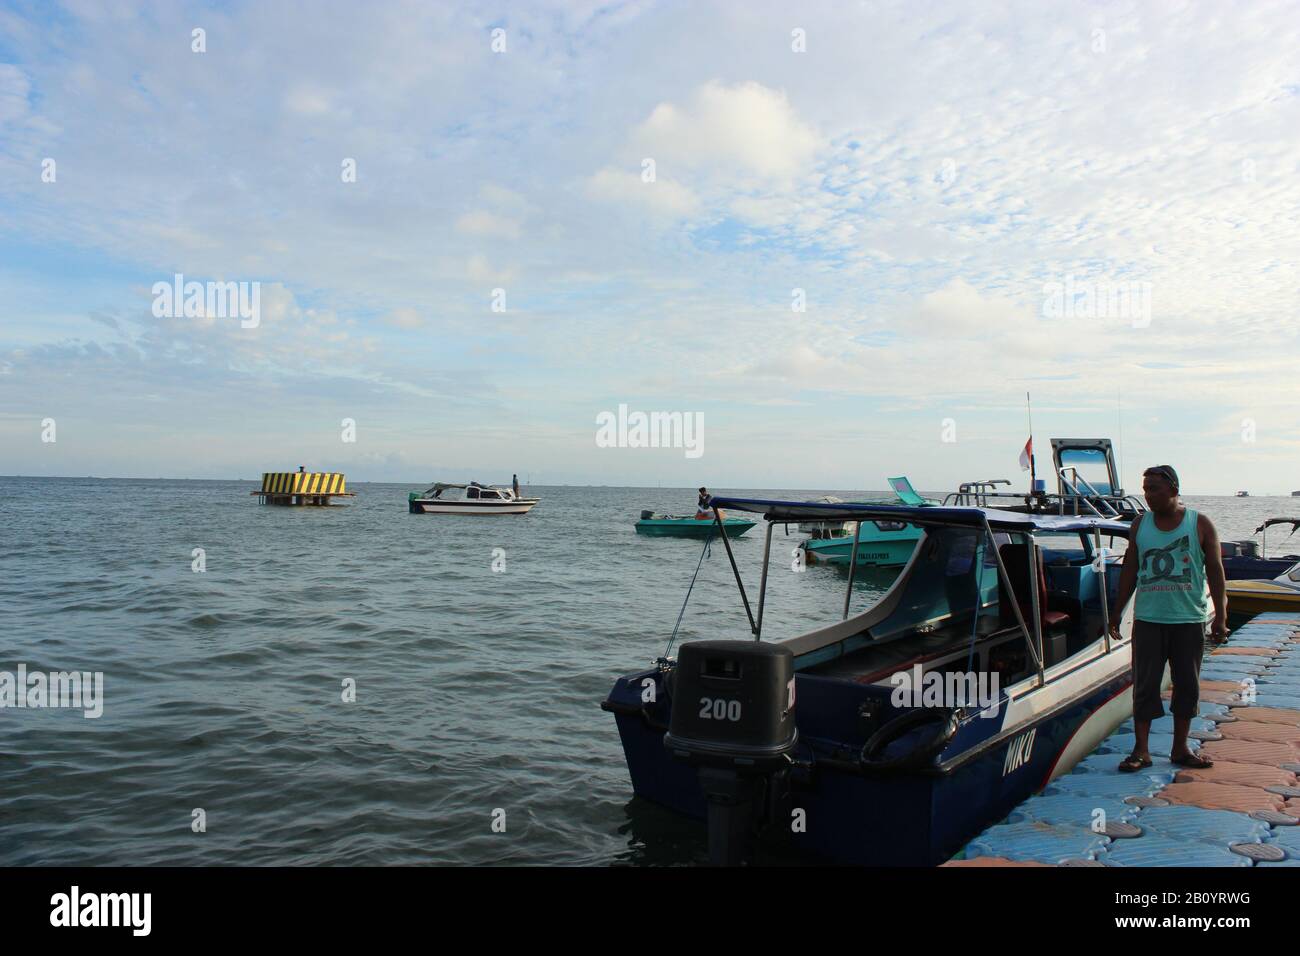 Man and the boat at Tanjung Batu Port Stock Photo